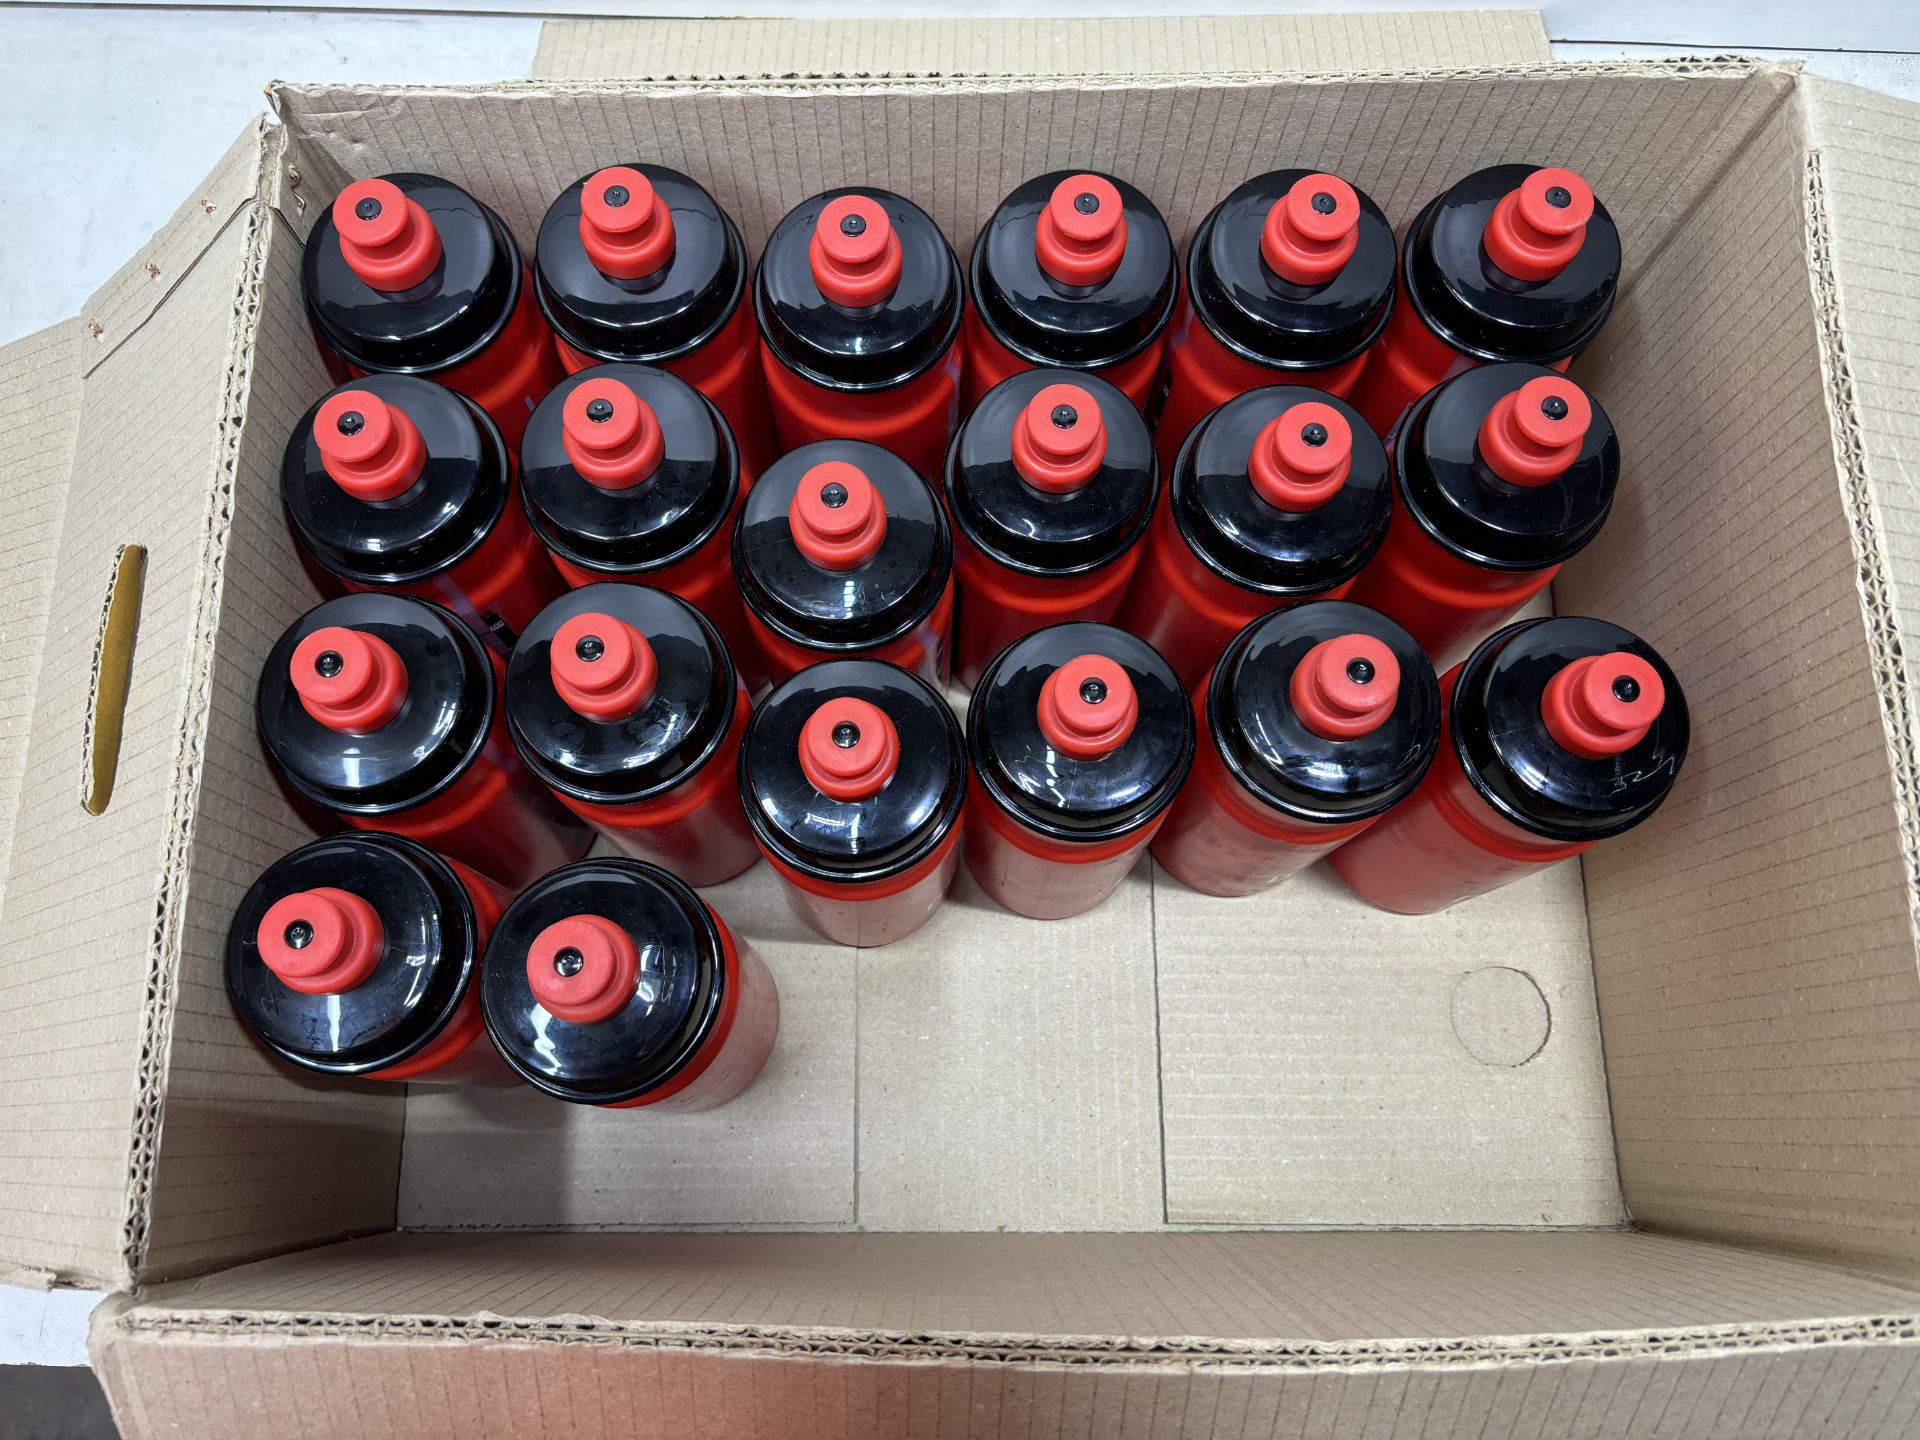 20 x Elite Jet Water Bottles - 550ml, Red - Image 3 of 3